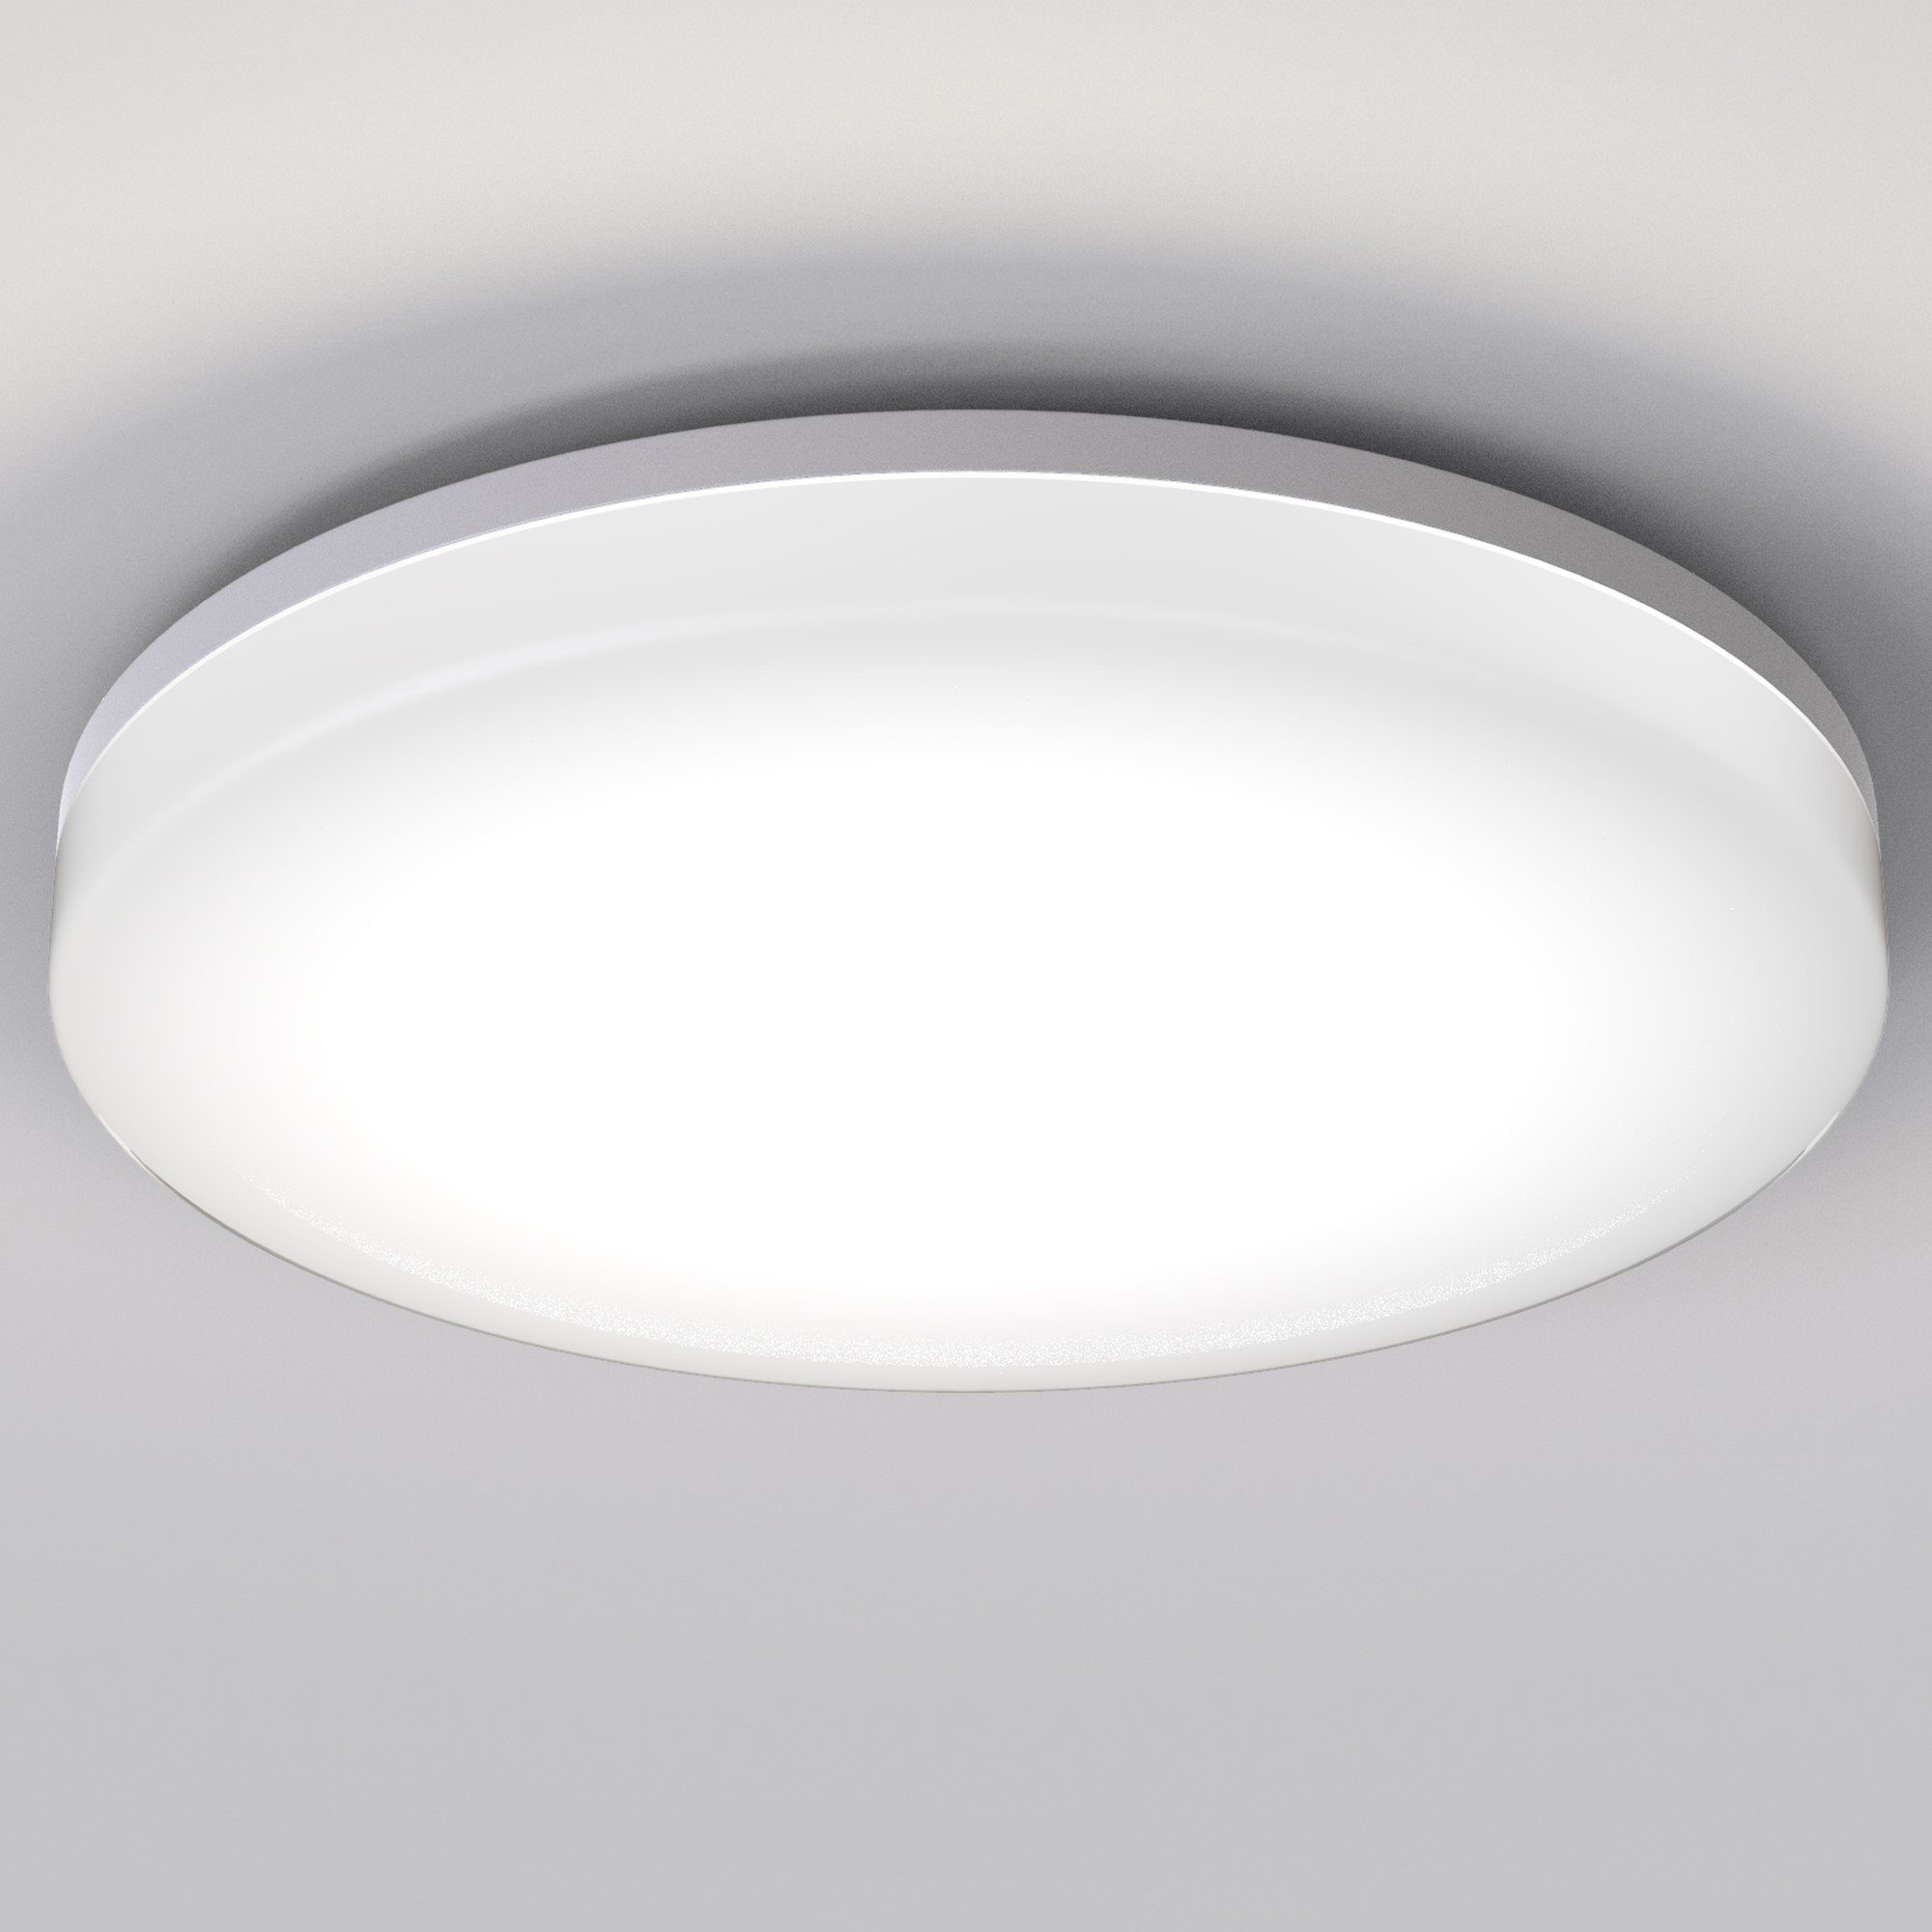 36W LED Deckenleuchte Deckenlampe Badleuchte Wohnzimmer Küche Flur Einbau Lampe 